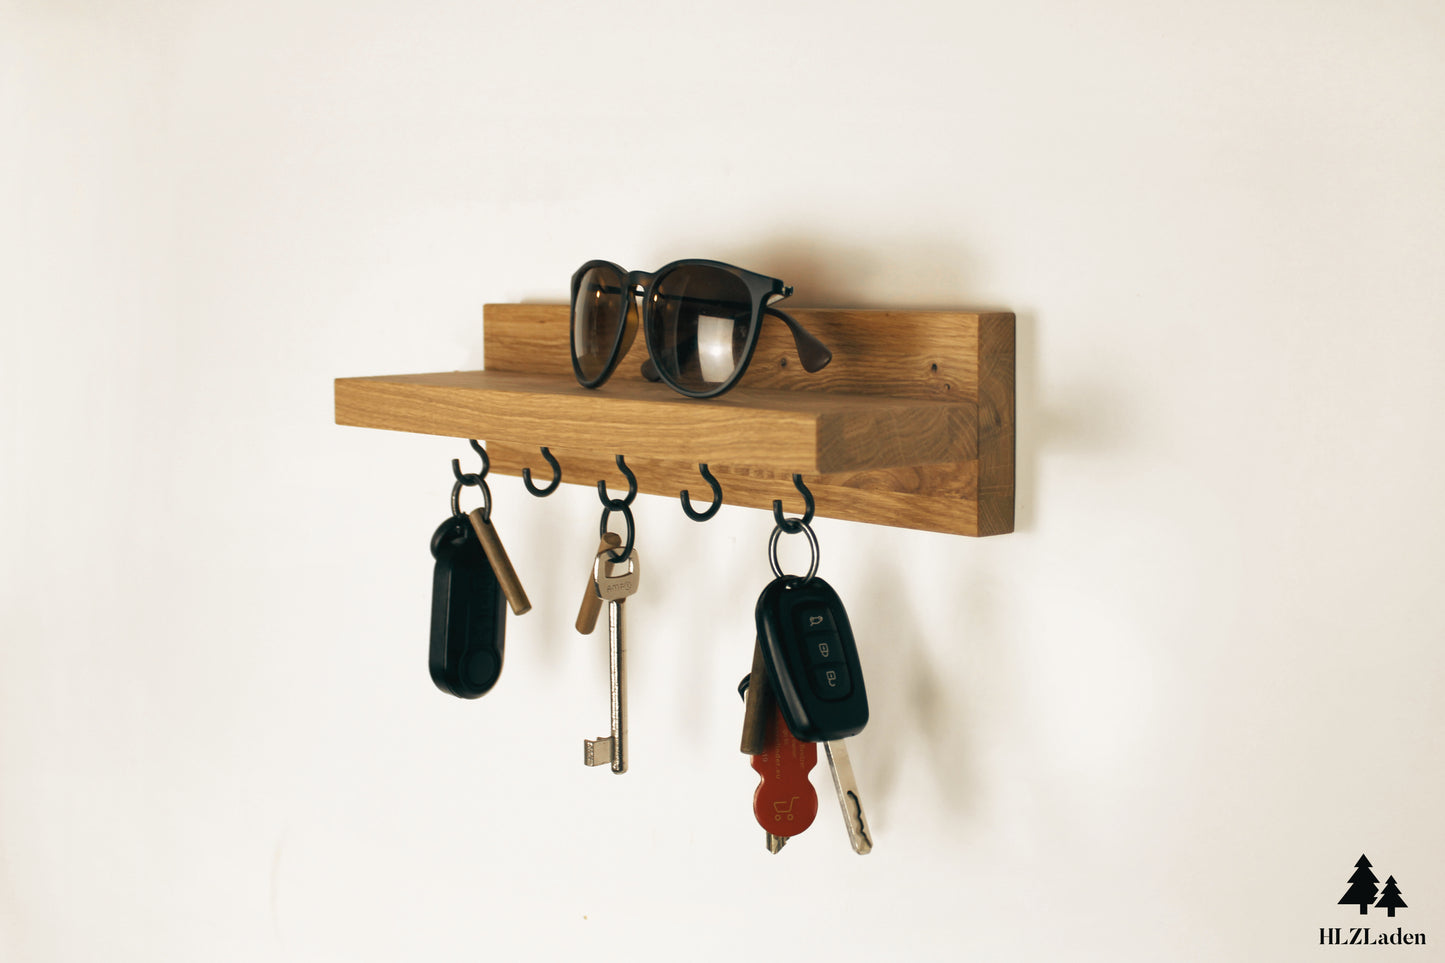 Schlüsselbrett mit Ablage aus Eichenholz mit schwarzen Schraubhaken